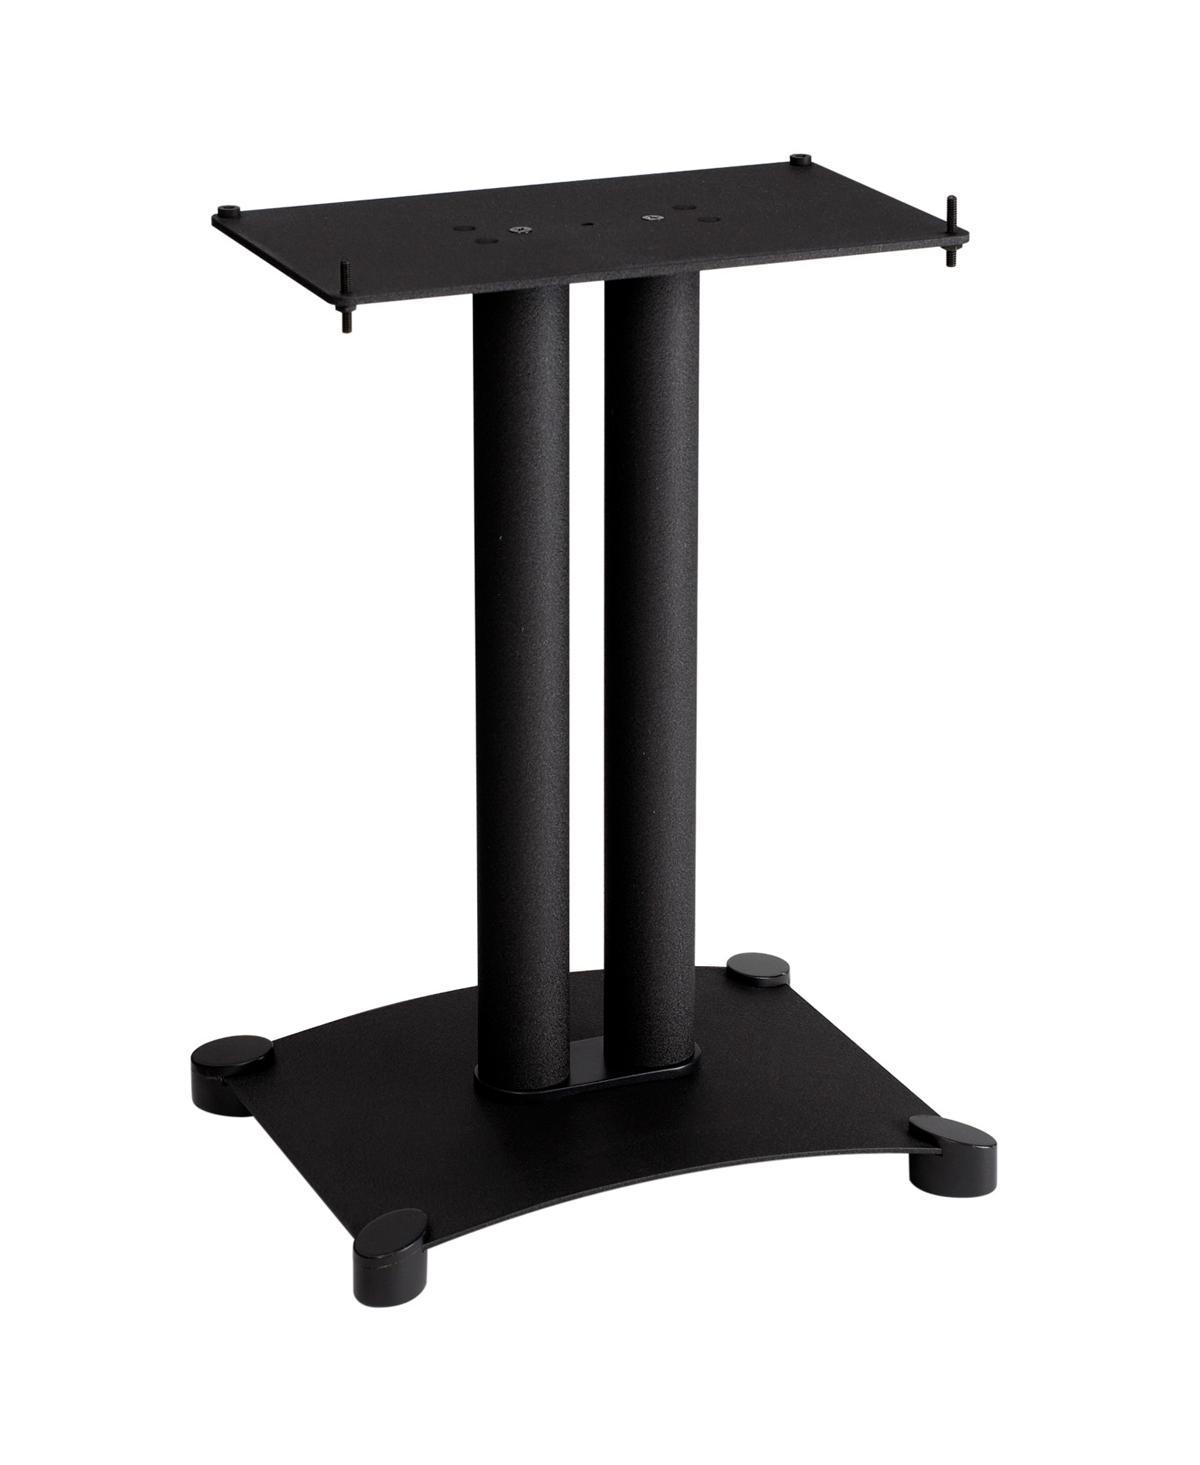 Sanus Sfc22 Steel Series 22" Speaker Stand In Black